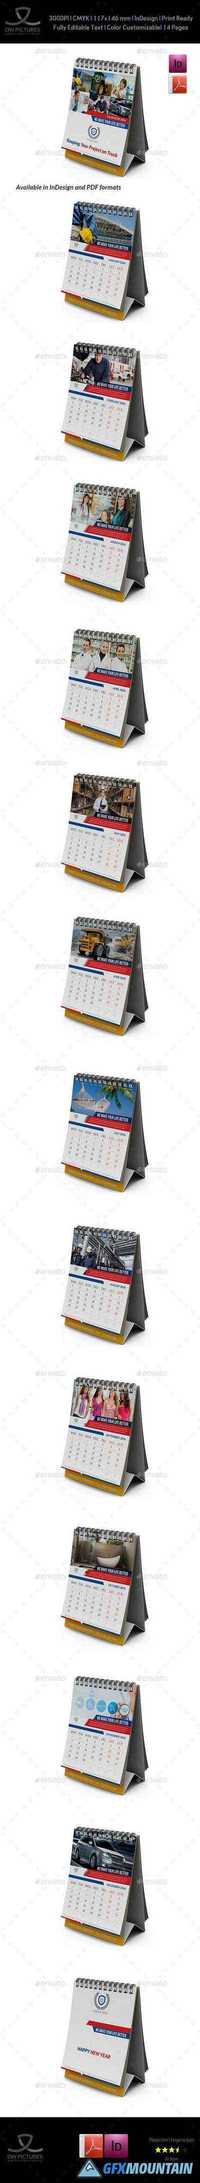 Graphicriver 3 Multipurpose Calendar Template Bundle 13311599